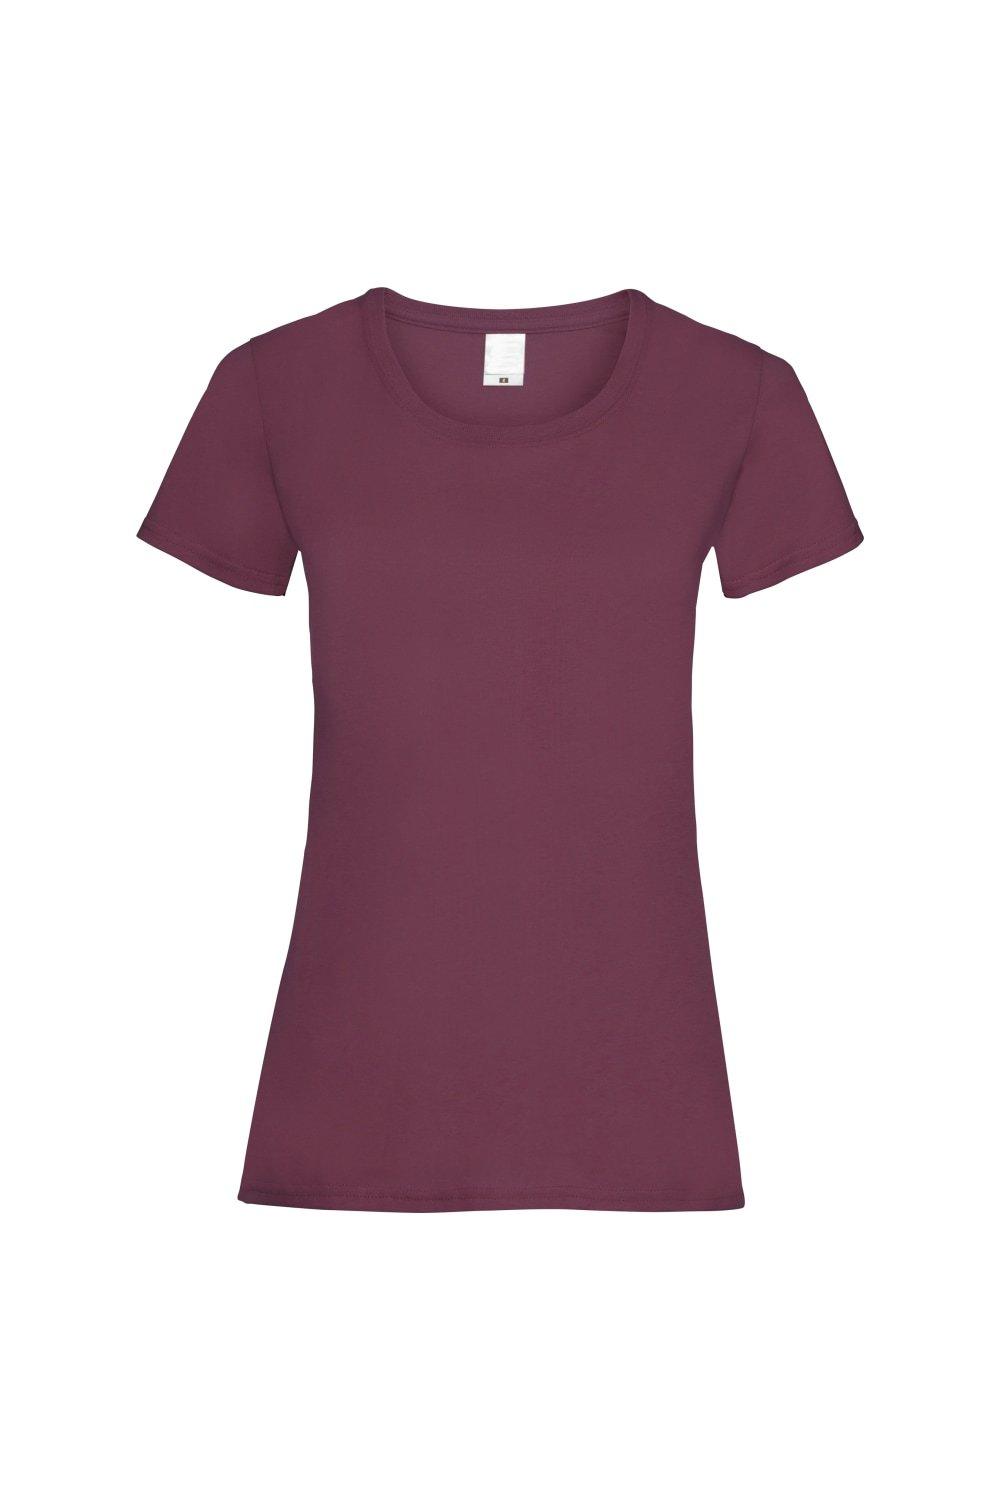 Повседневная футболка с короткими рукавами Value Universal Textiles, красный мужская футболка игуана с коктейлем s серый меланж